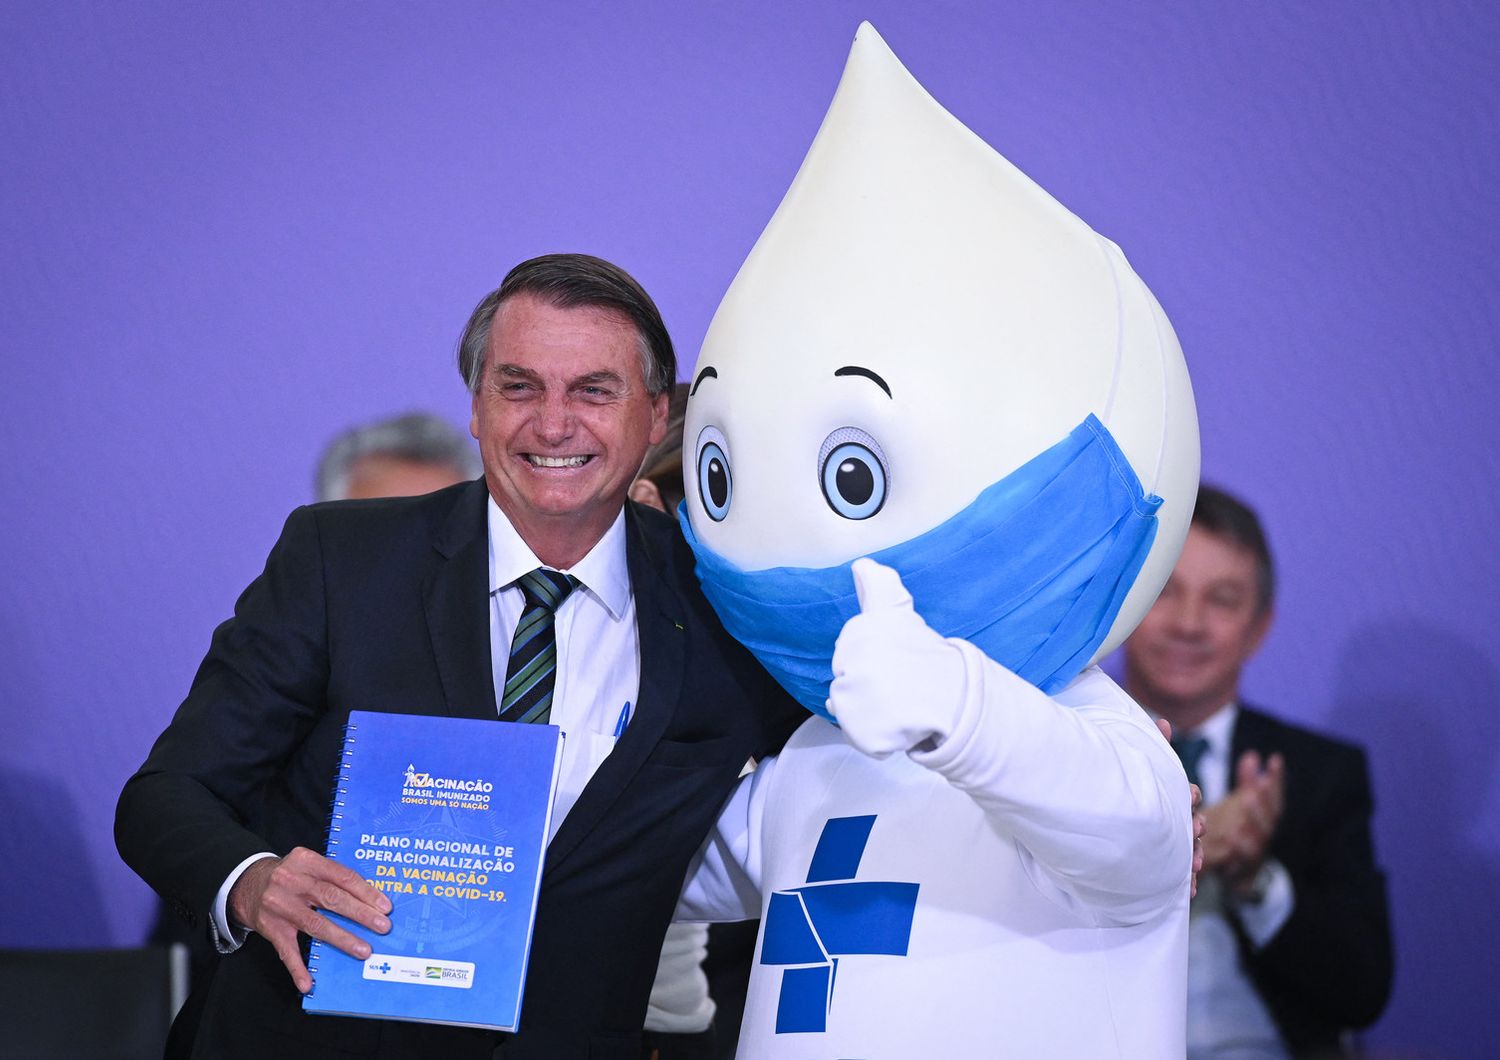 Il presidente brasiliano, Bolsonaro, con la mascotte scelta per la campagna vaccinale anti Covid nel Paese